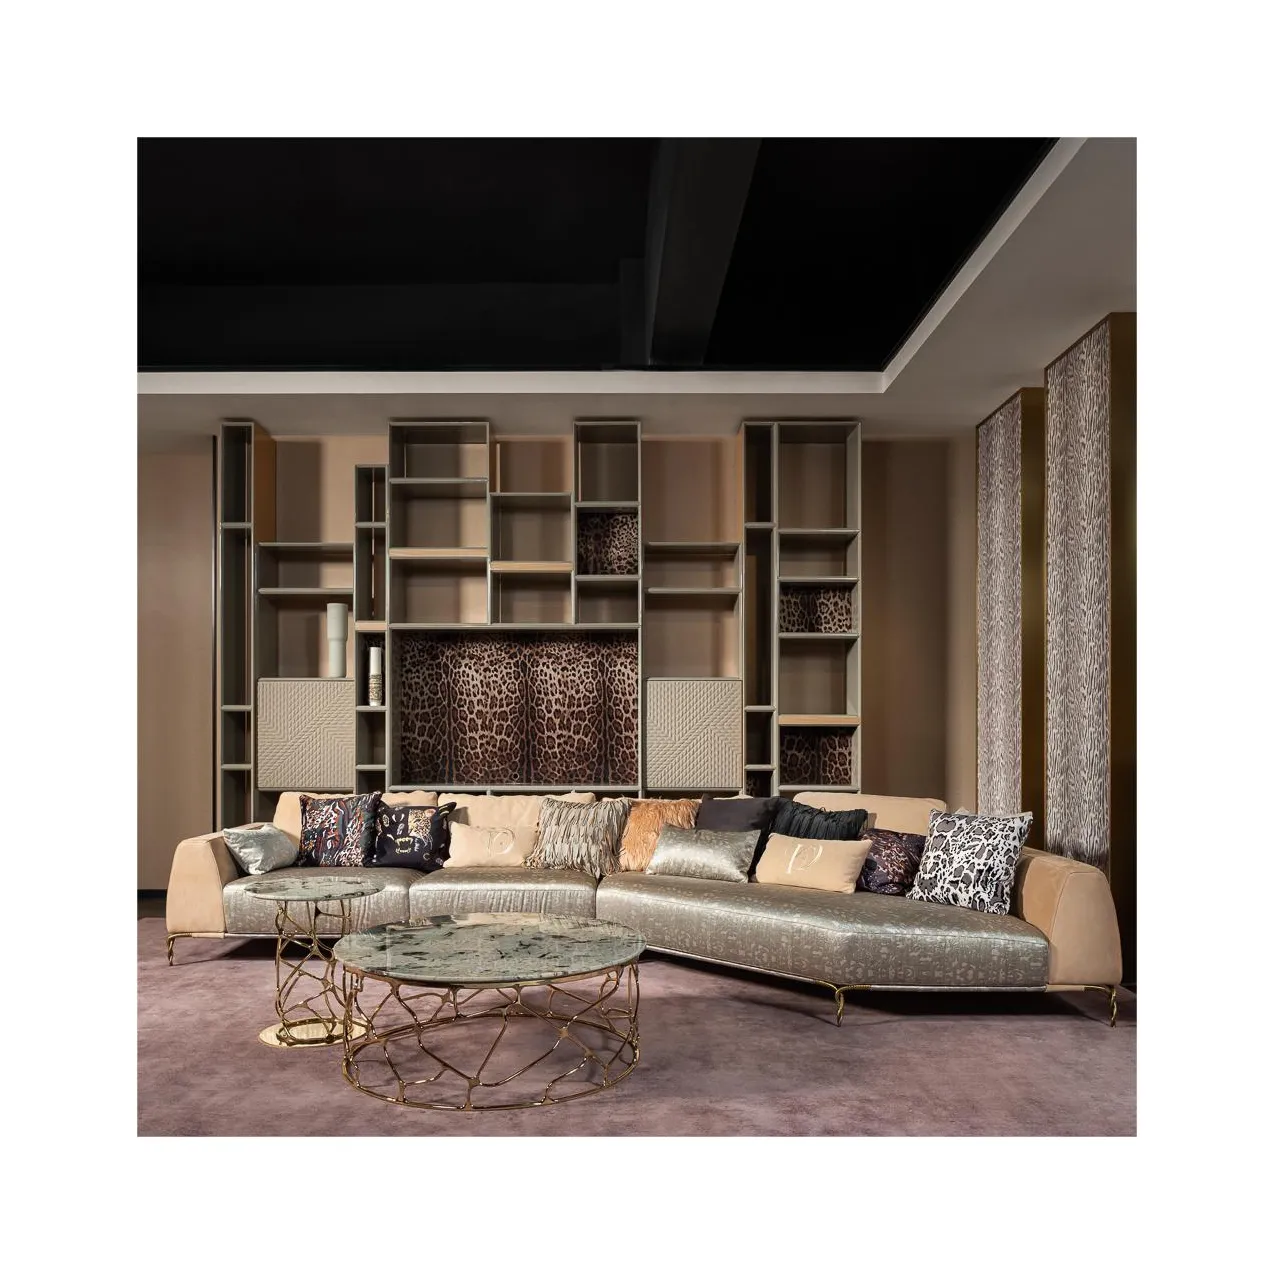 Set Sofa kulit kaki kayu Nordik sederhana desain furnitur Royal L bentuk 6 tempat duduk Sofa untuk ruang tamu